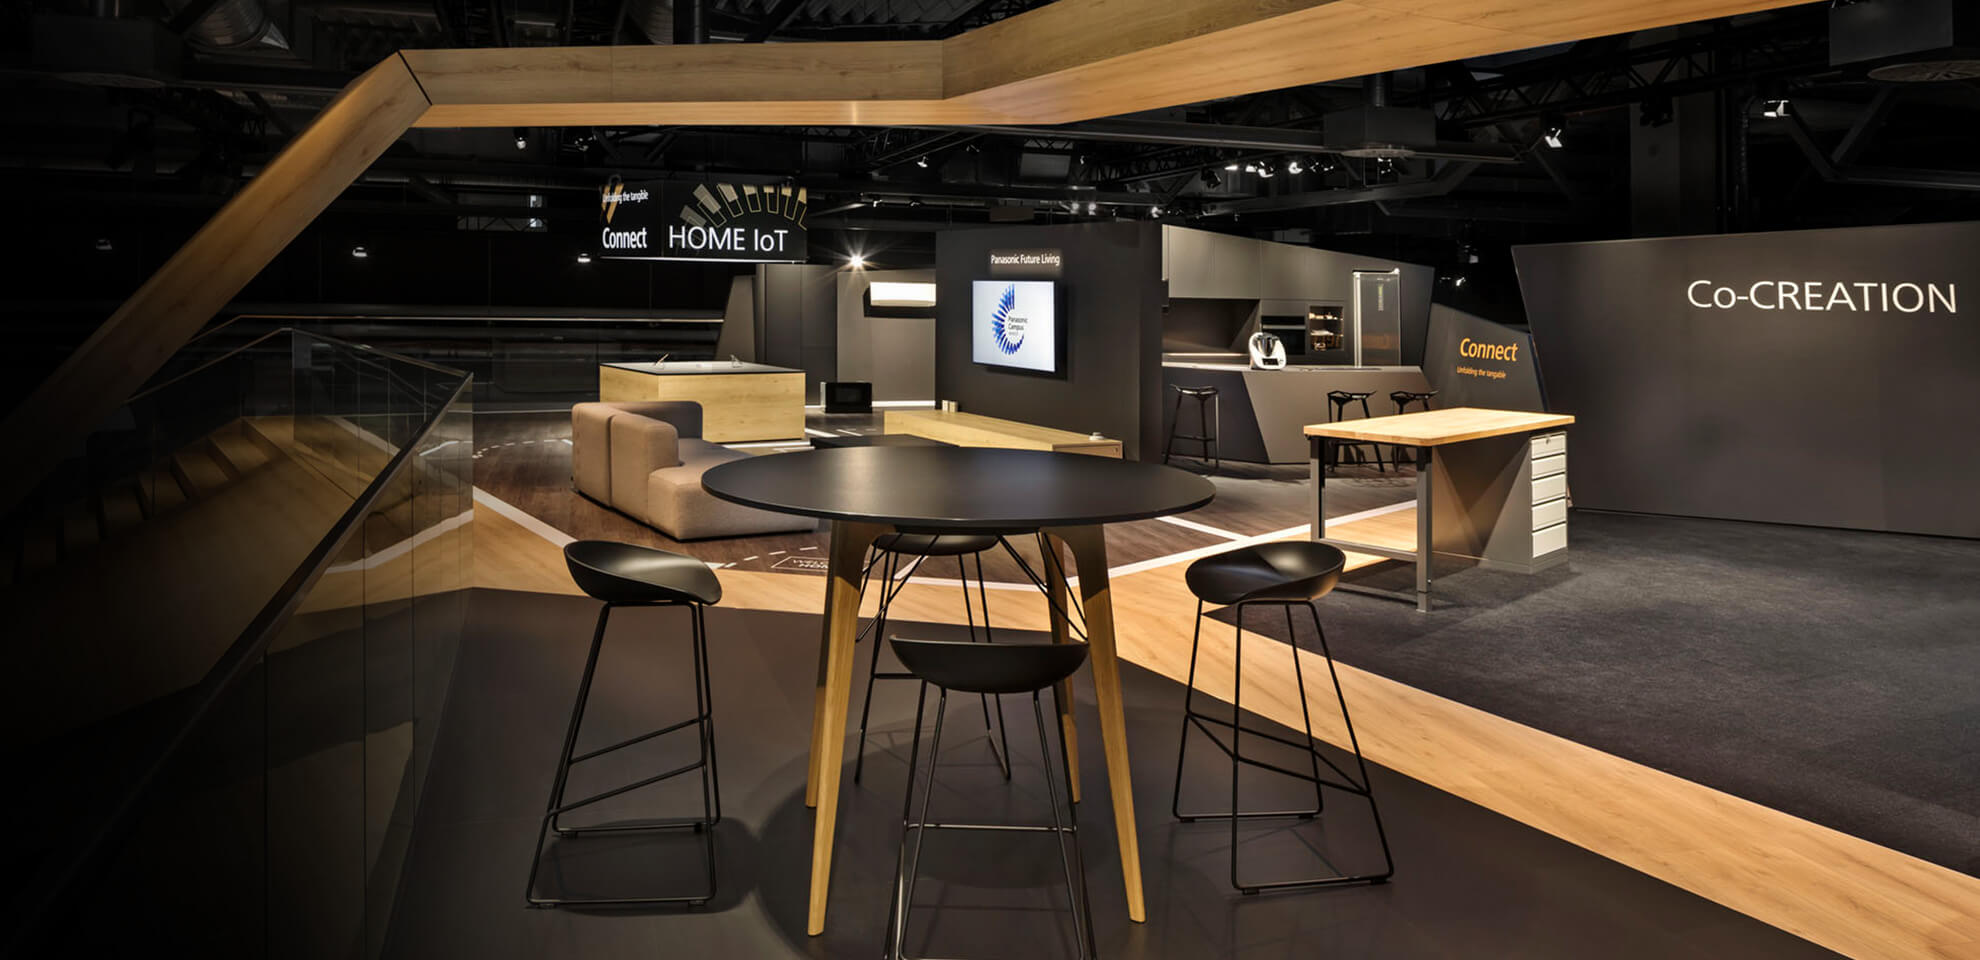 Moderner Showroom, der Ihre Kunden und Gäste überzeugt – gebaut von Innenausbauer Display International.